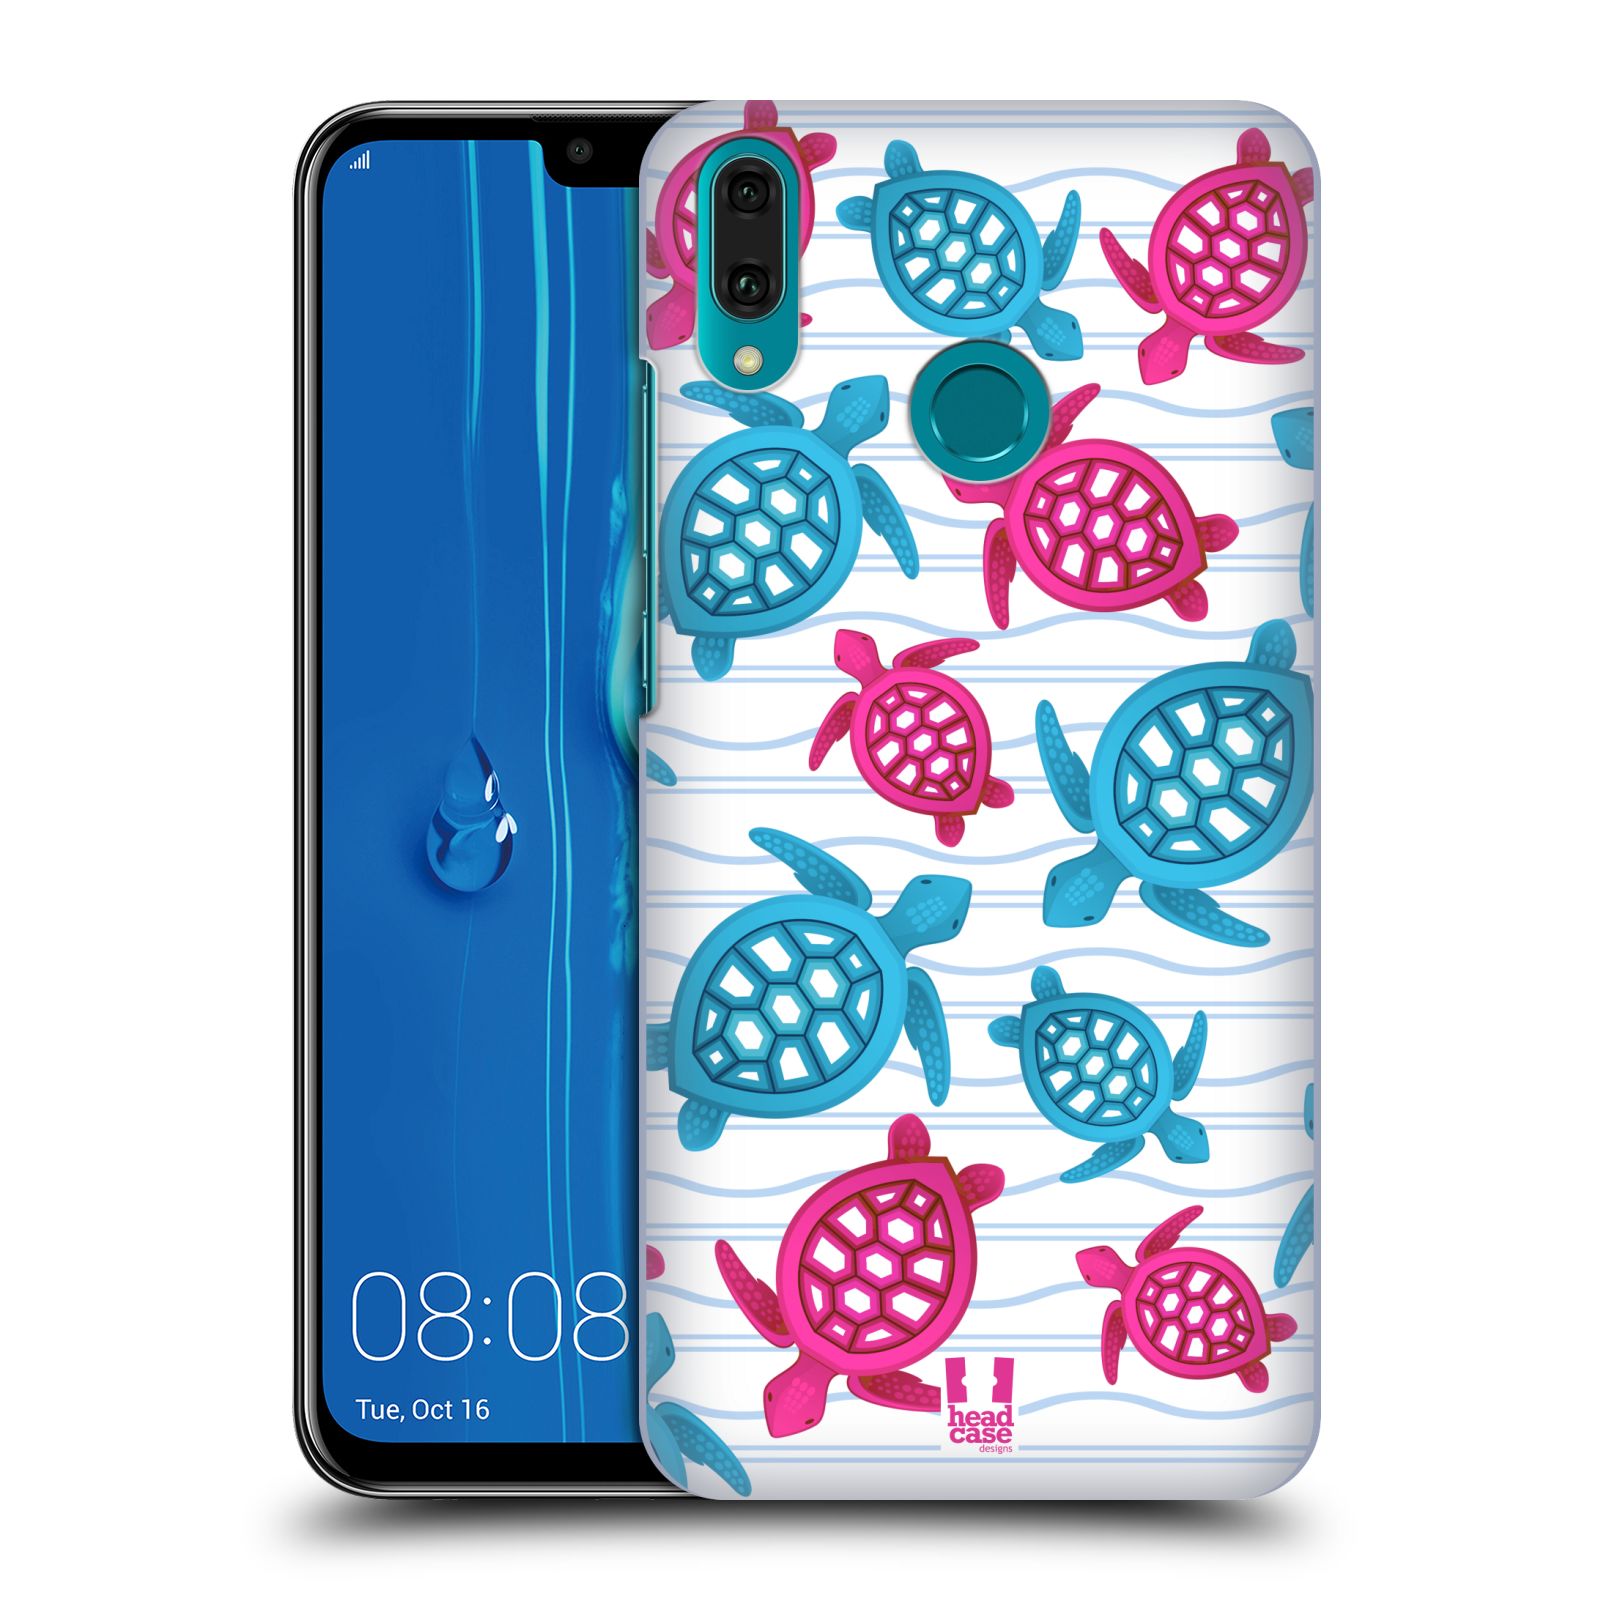 Pouzdro na mobil Huawei Y9 2019 - HEAD CASE - vzor mořský živočich želva modrá a růžová